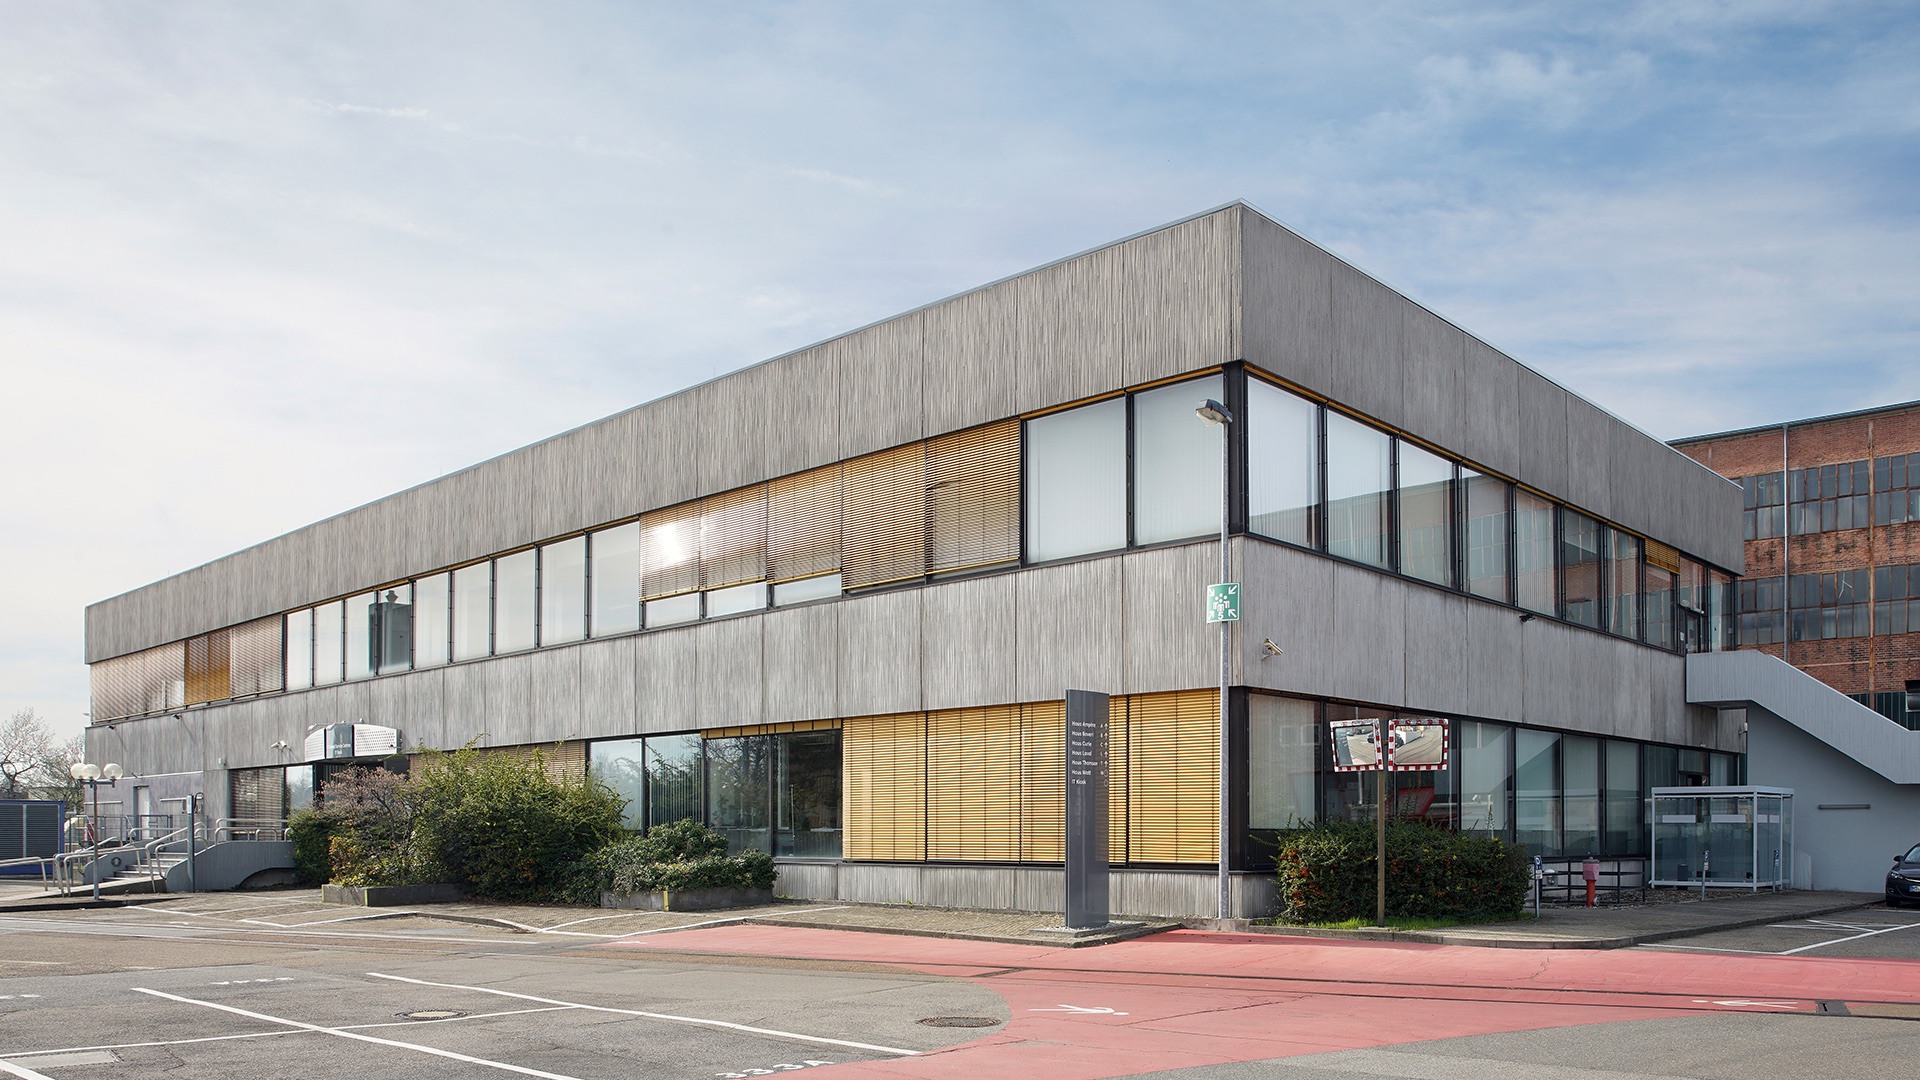 Büroflächen mit industriellem Loft-Charakter: Das Haus Watt mit seinem durchlaufenden Fensterband beeindruckt mit hohen, lichten Räumen, welche die Flächen optisch vergrößern.